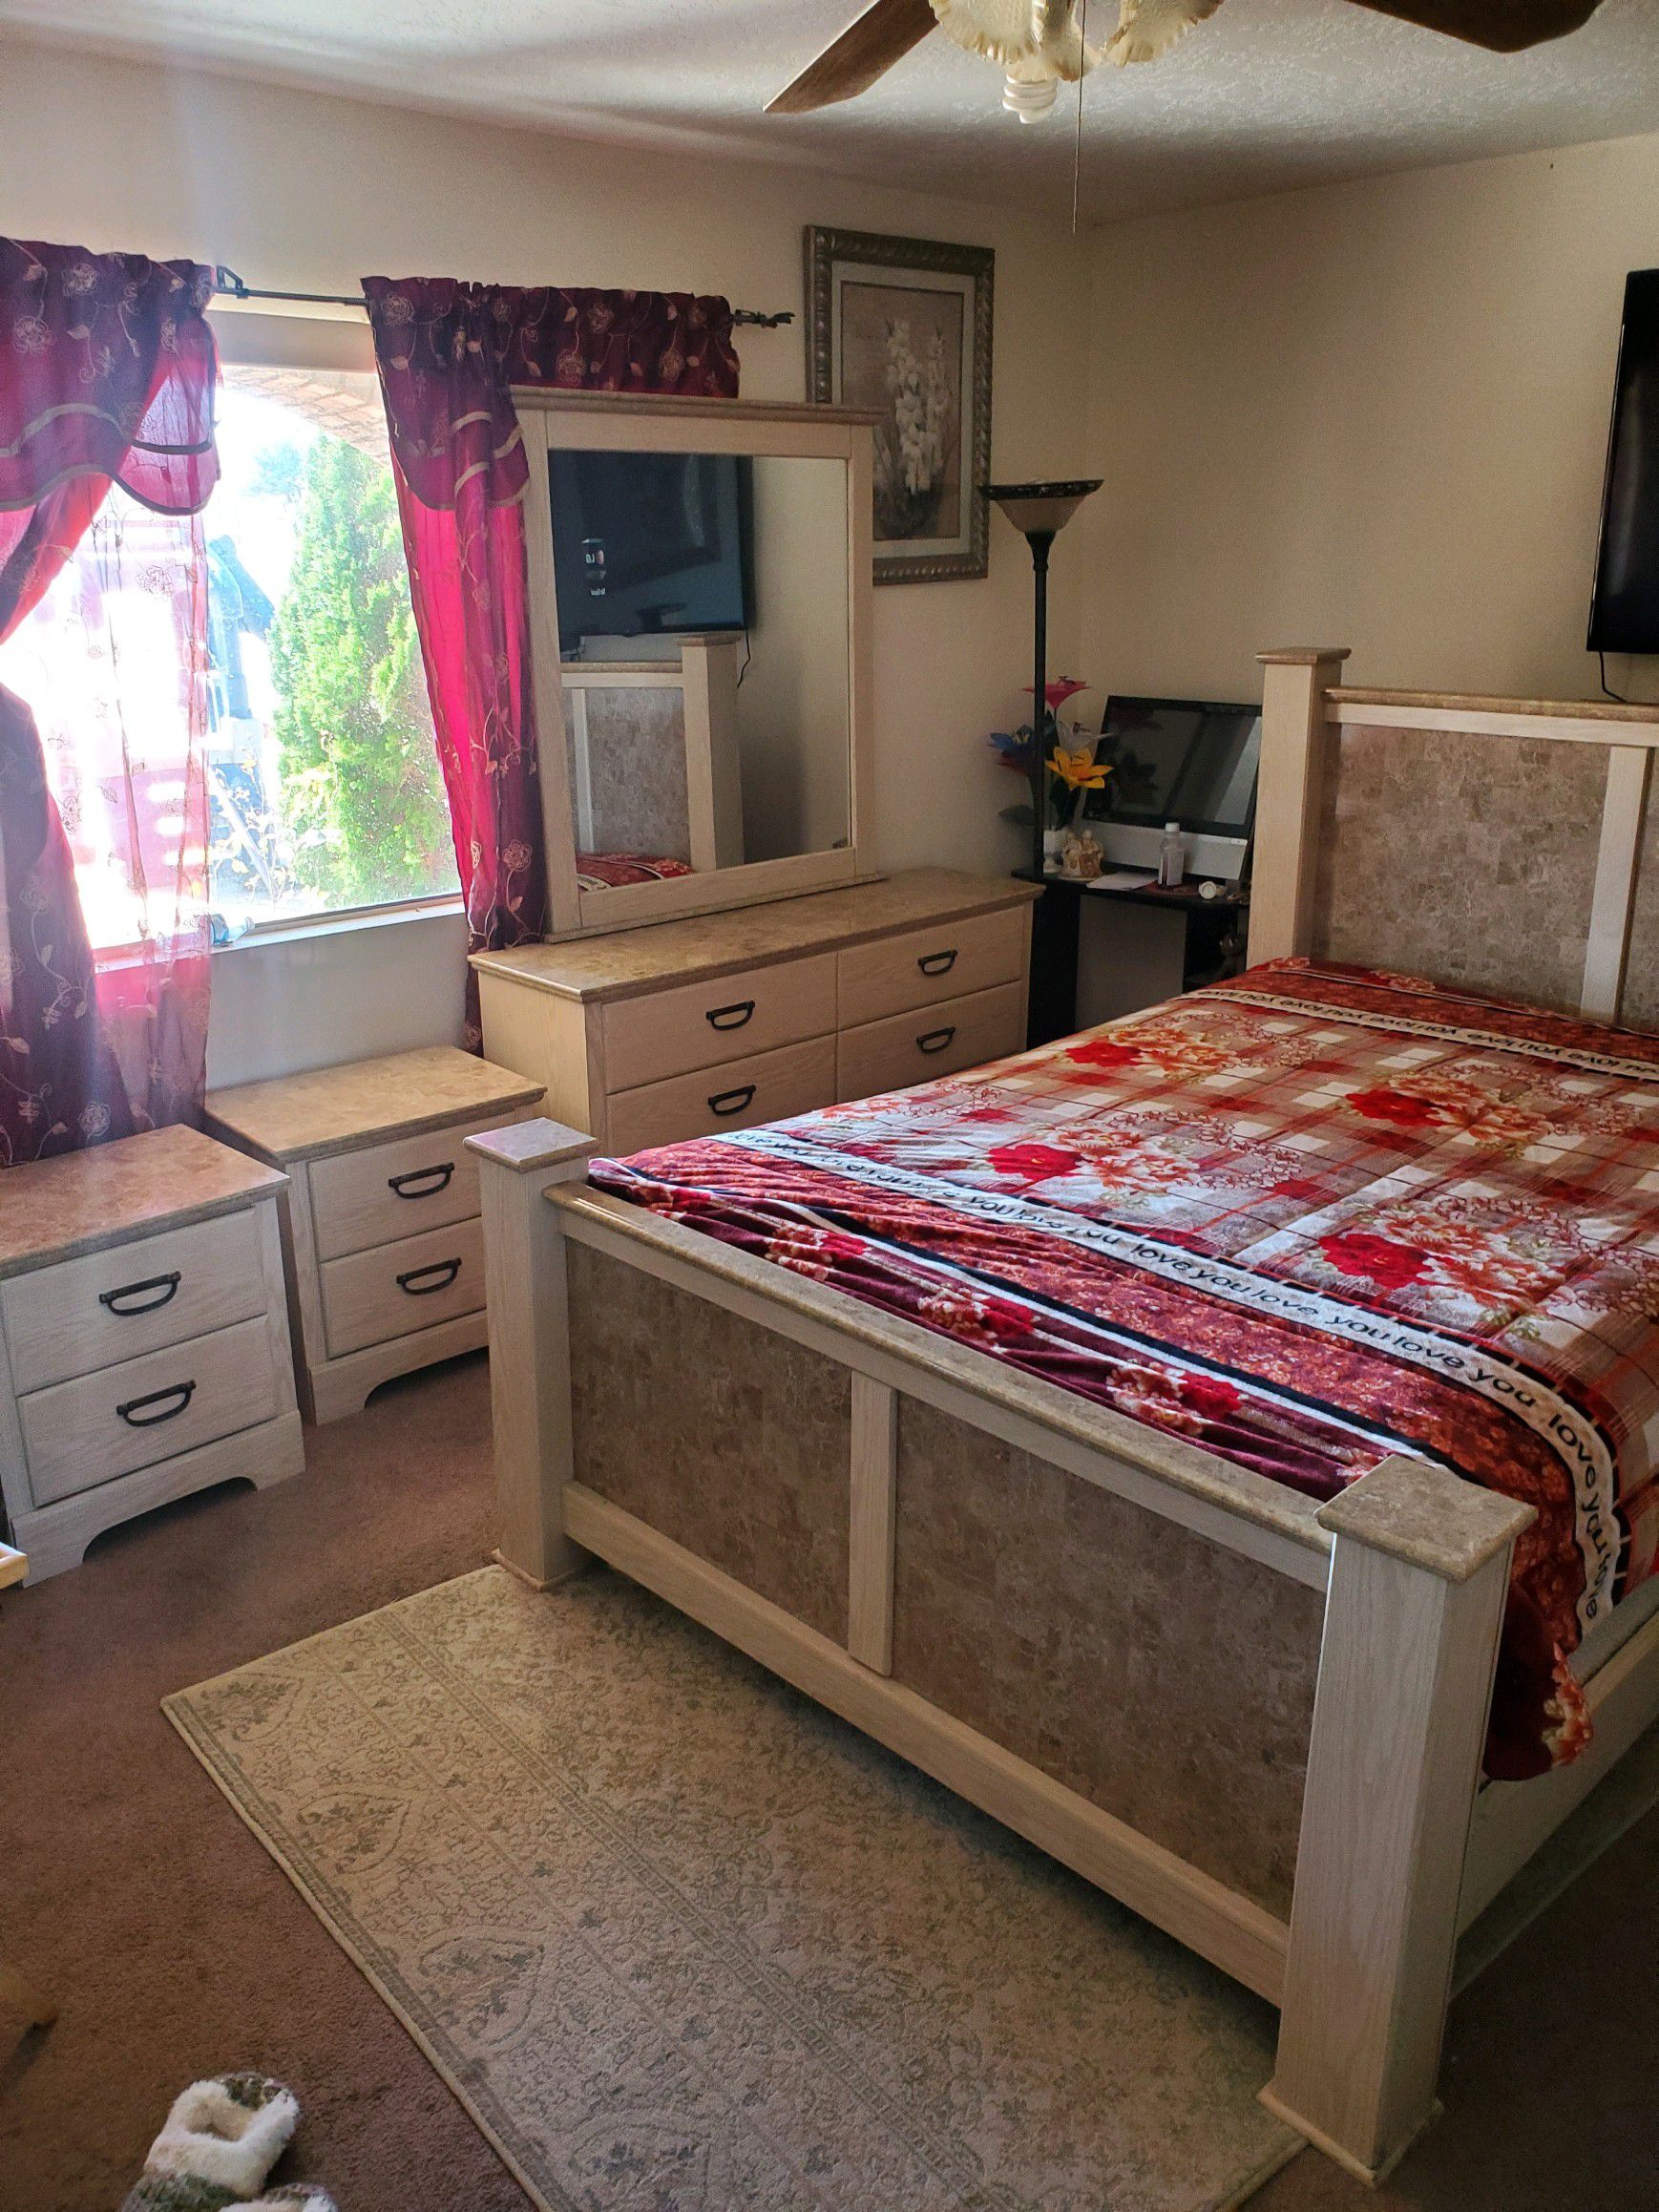 Complete Queen size bedroom set ...like new